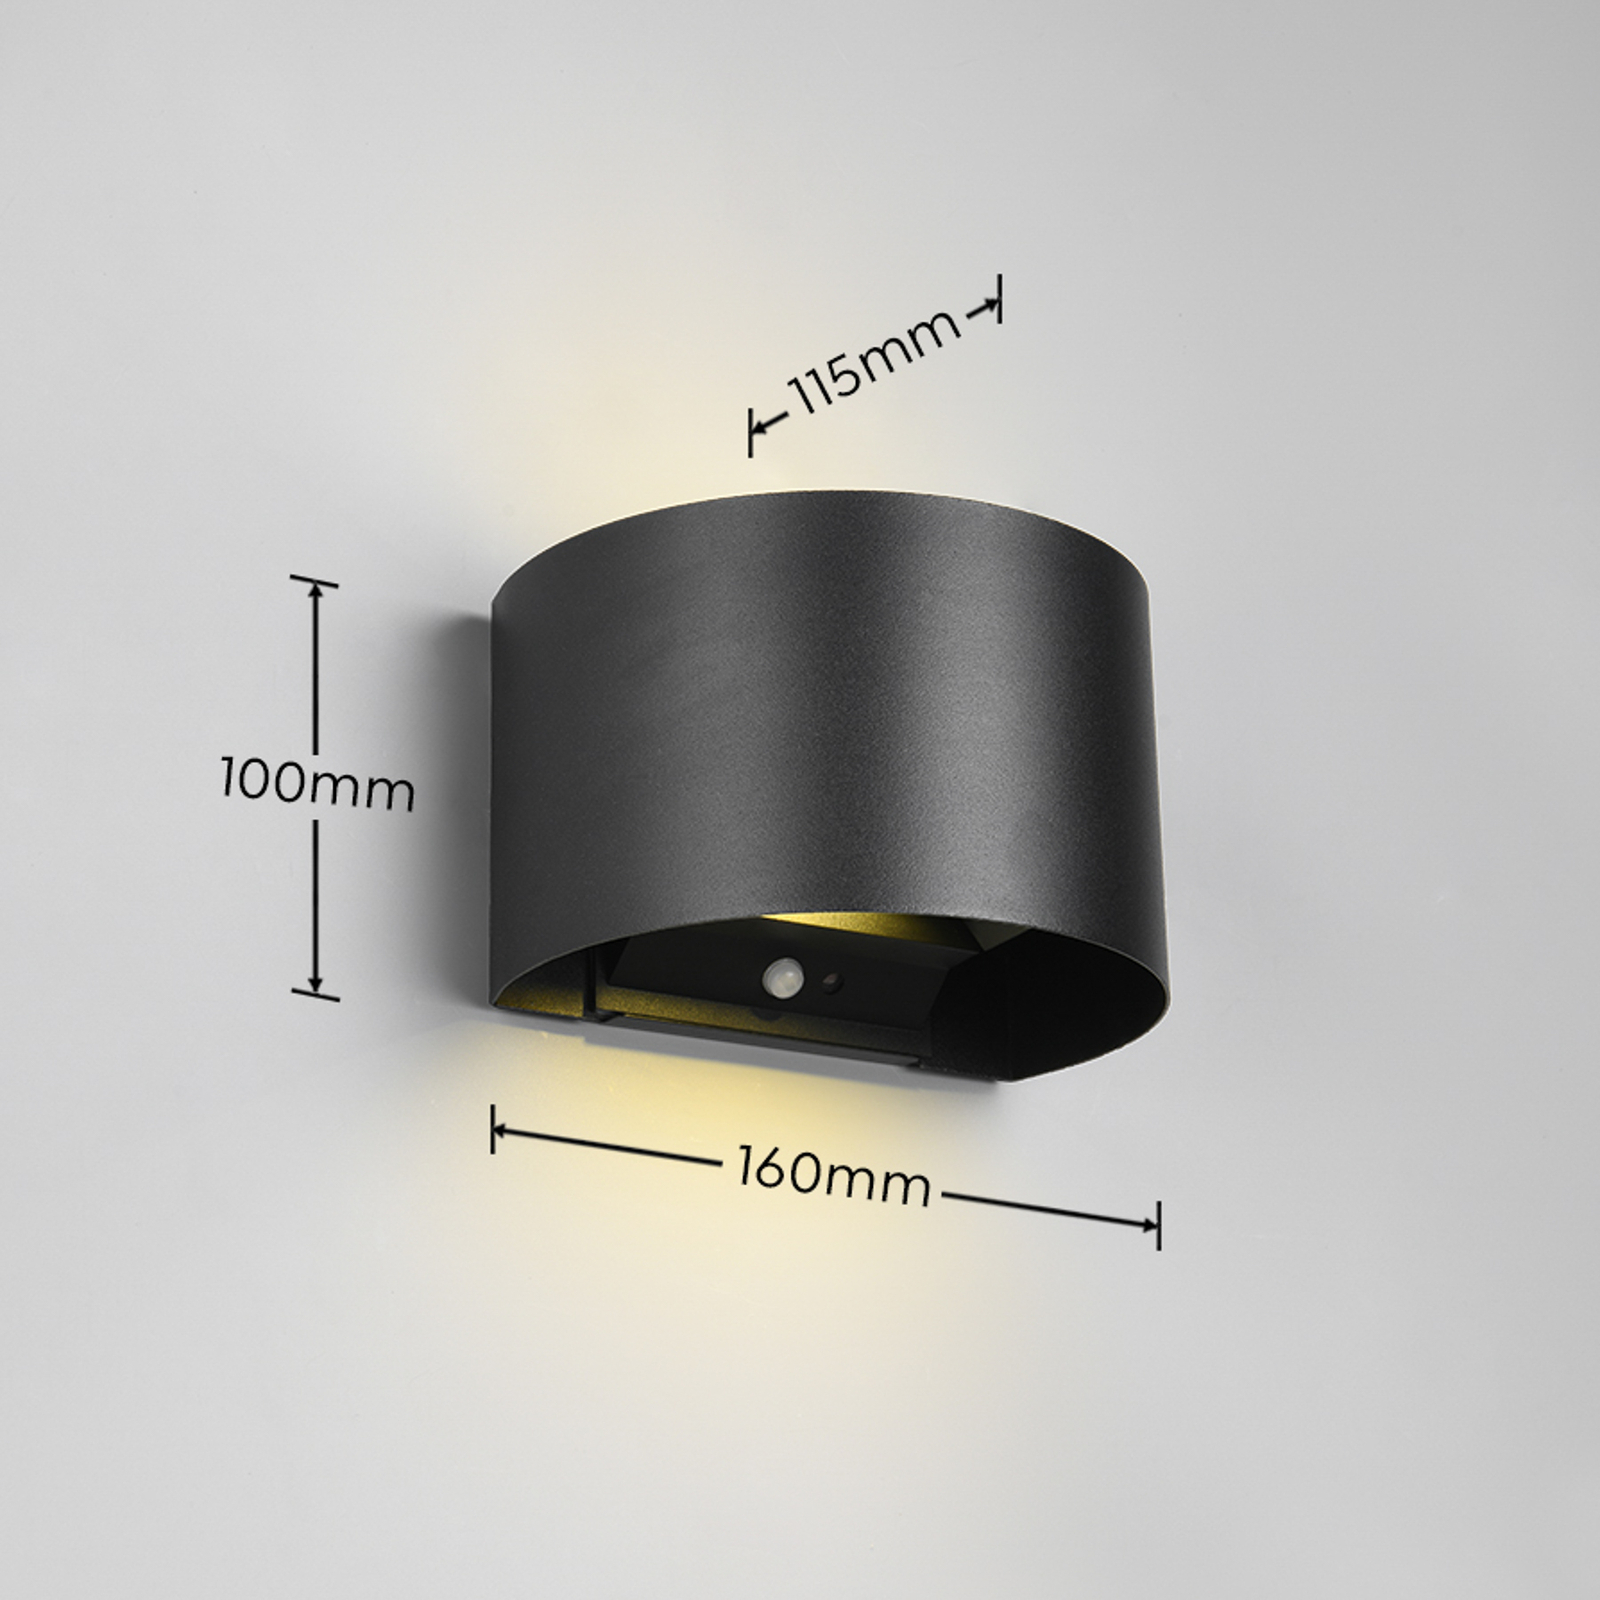 LED-es újratölthető kültéri fali lámpa Talent, fekete, szélesség 16 cm